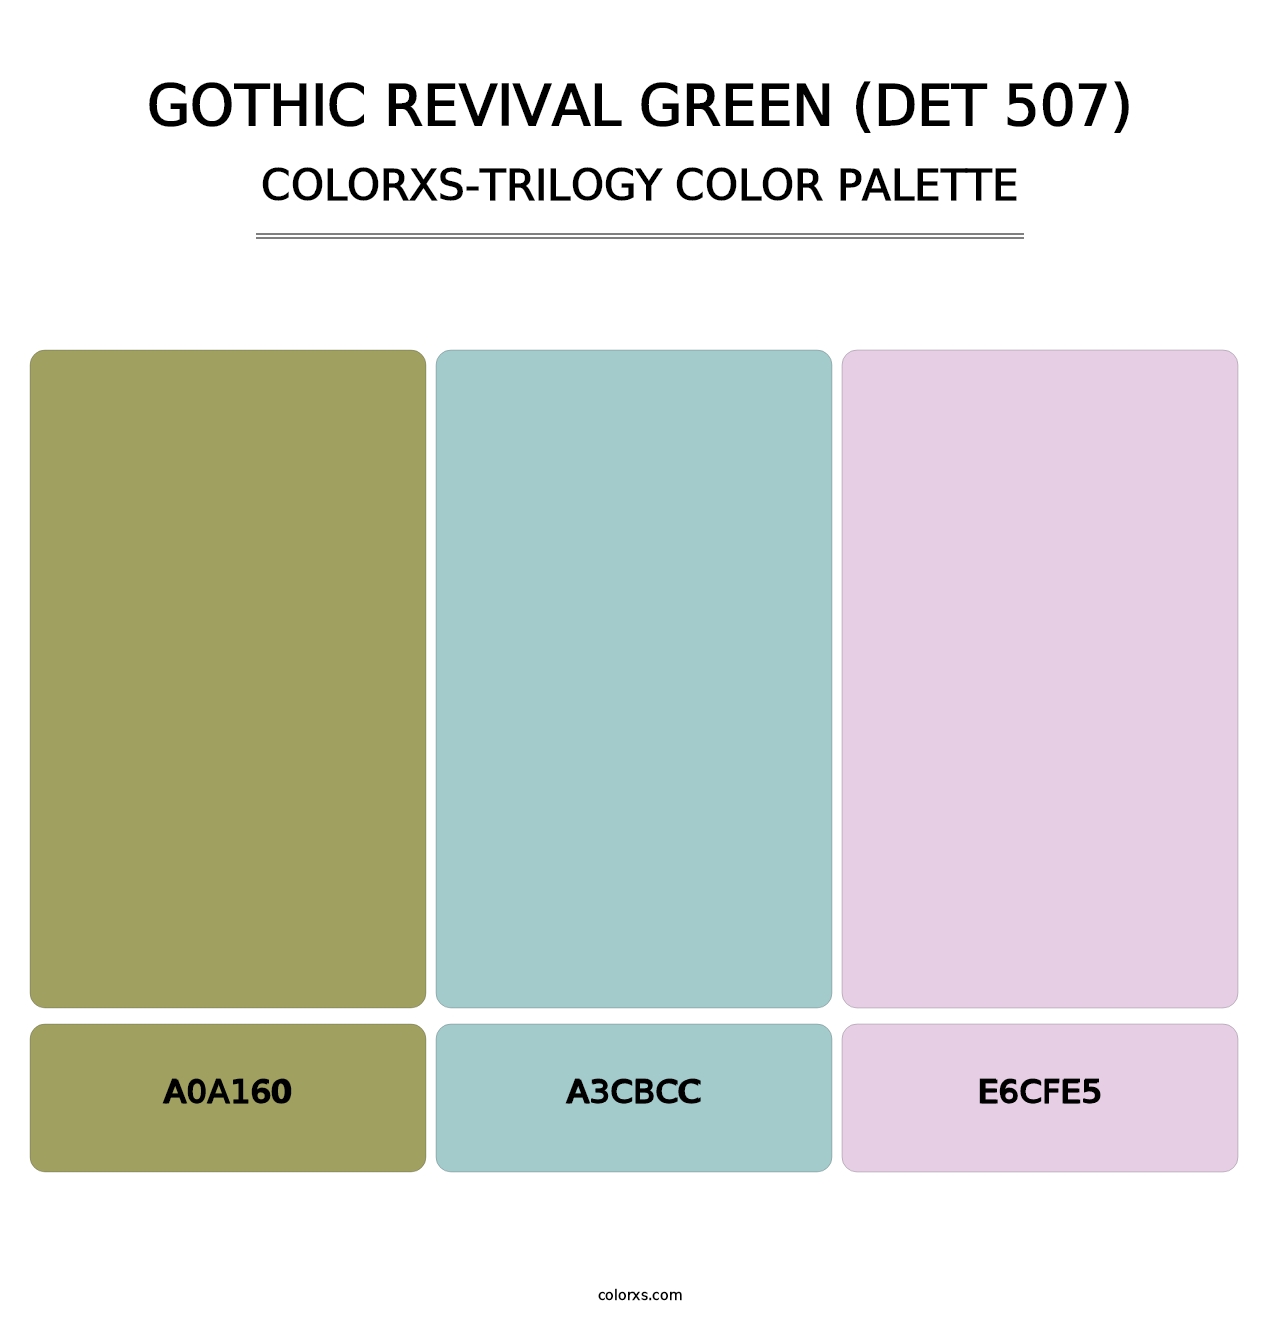 Gothic Revival Green (DET 507) - Colorxs Trilogy Palette